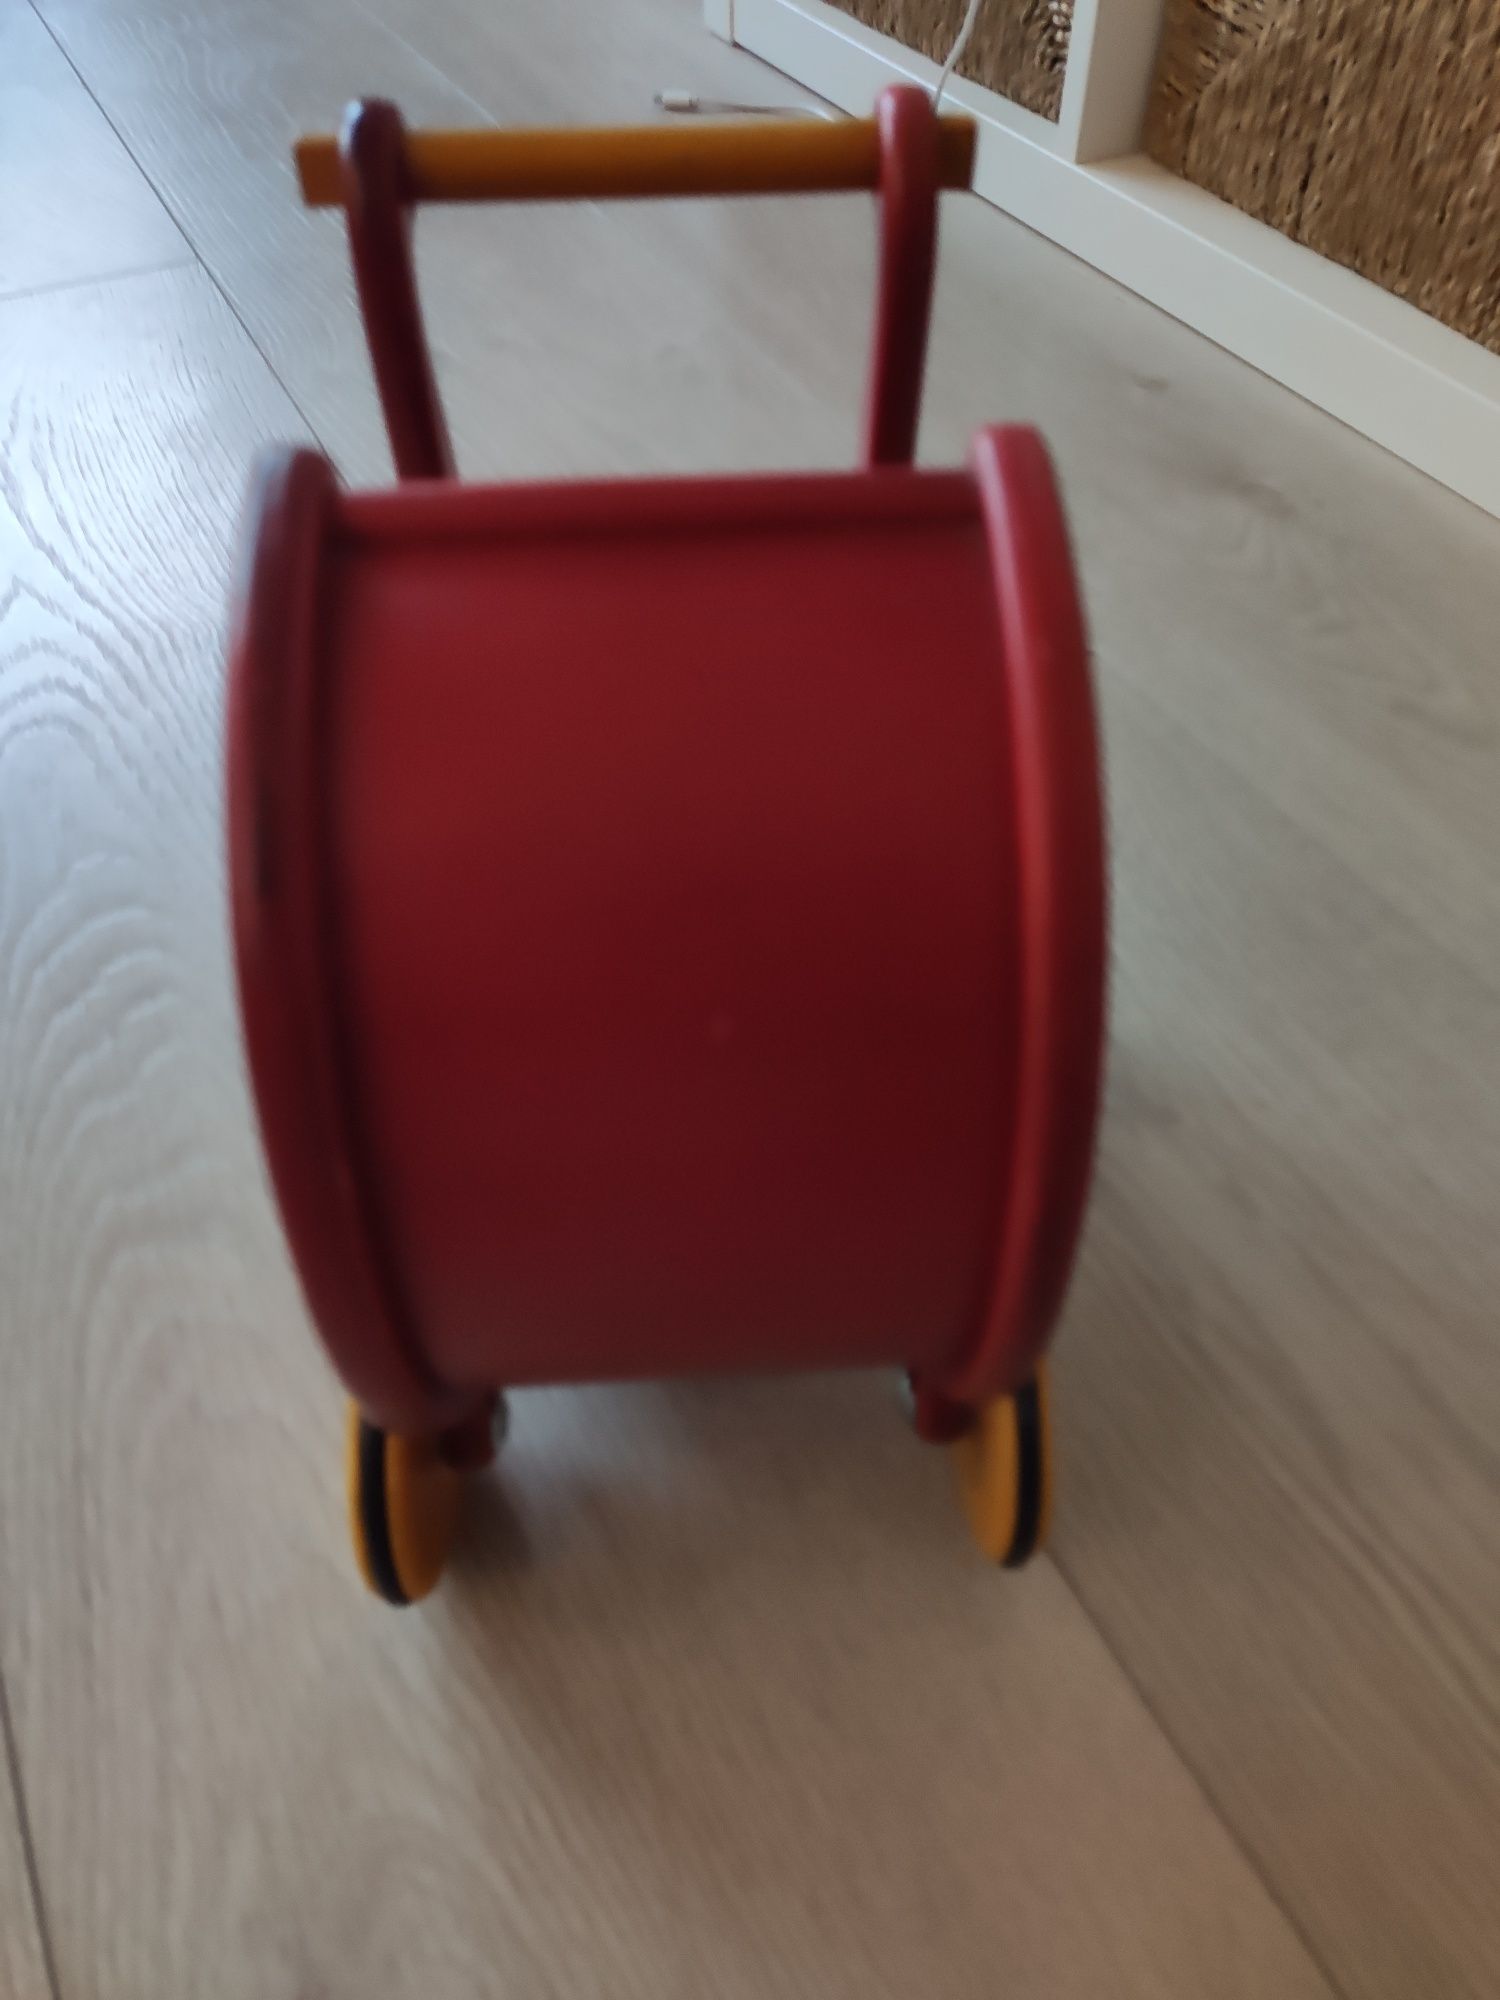 Mini wózek dla lalek Moover